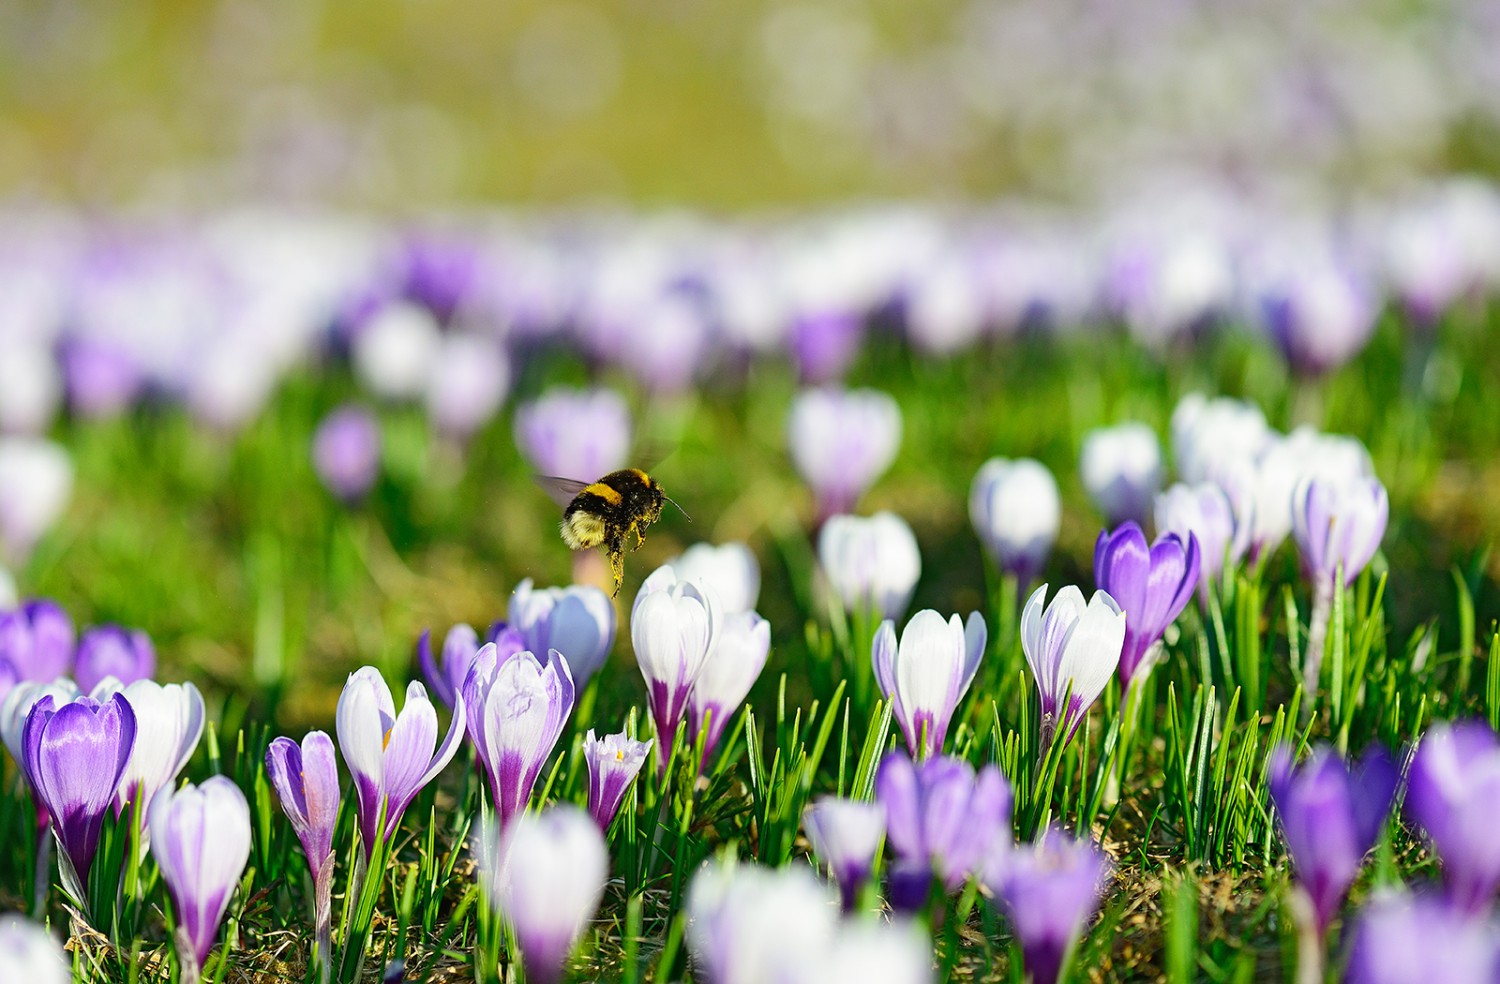 Les crocus fleurissent tôt dans l’année et sont donc la première source de nourriture des abeilles.